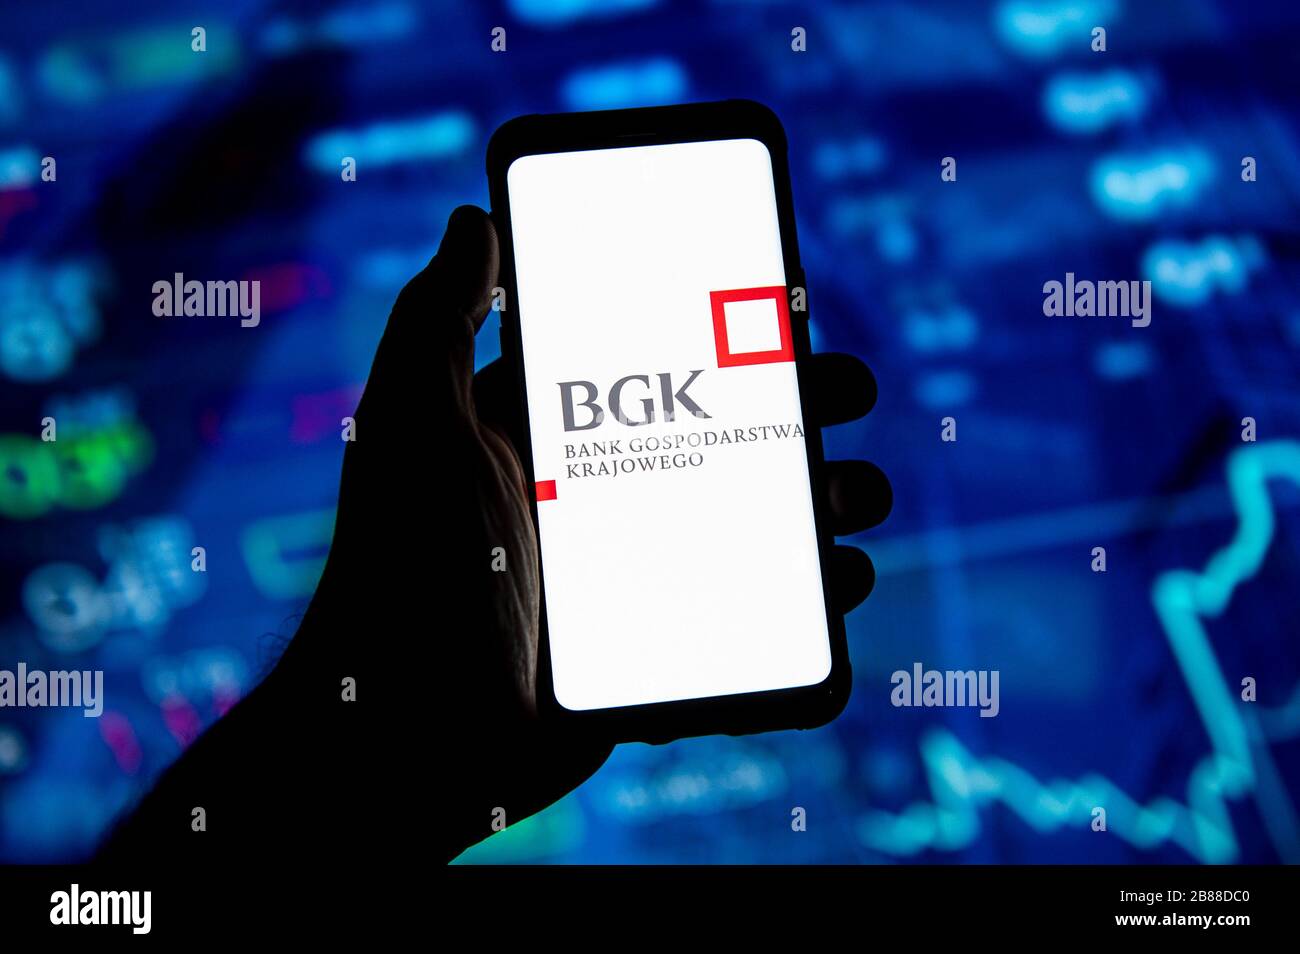 In dieser Abbildung ist ein BGK Bank Gospodarstwa Krajowego Logo auf einem Smartphone zu sehen. Stockfoto